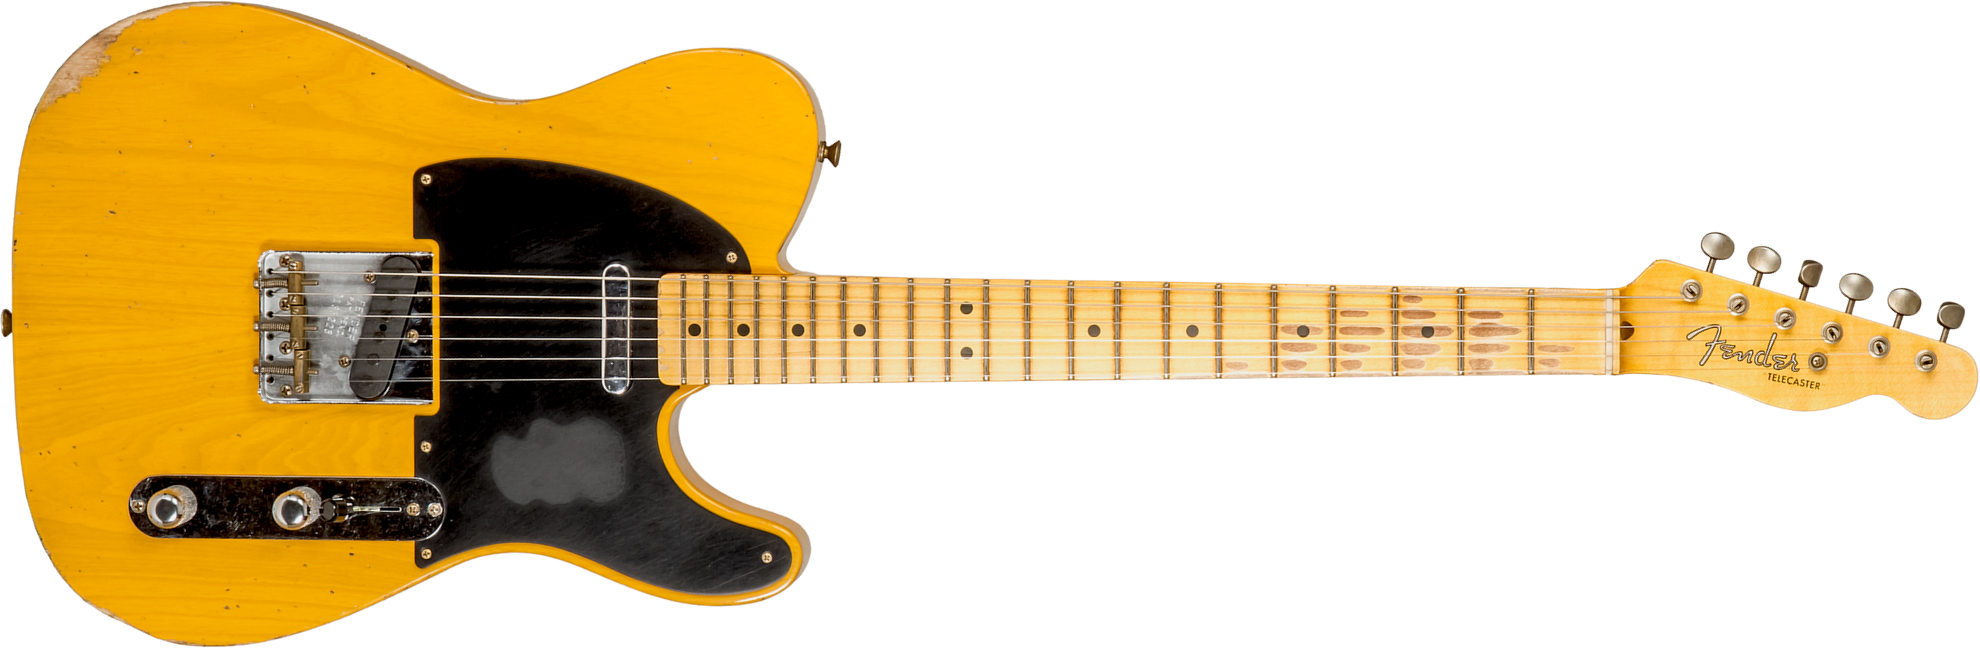 Fender Custom Shop Tele 1952 2s Ht Mn #r135225 - Relic Aged Buttercotch Blonde - Guitare Électrique Forme Tel - Main picture